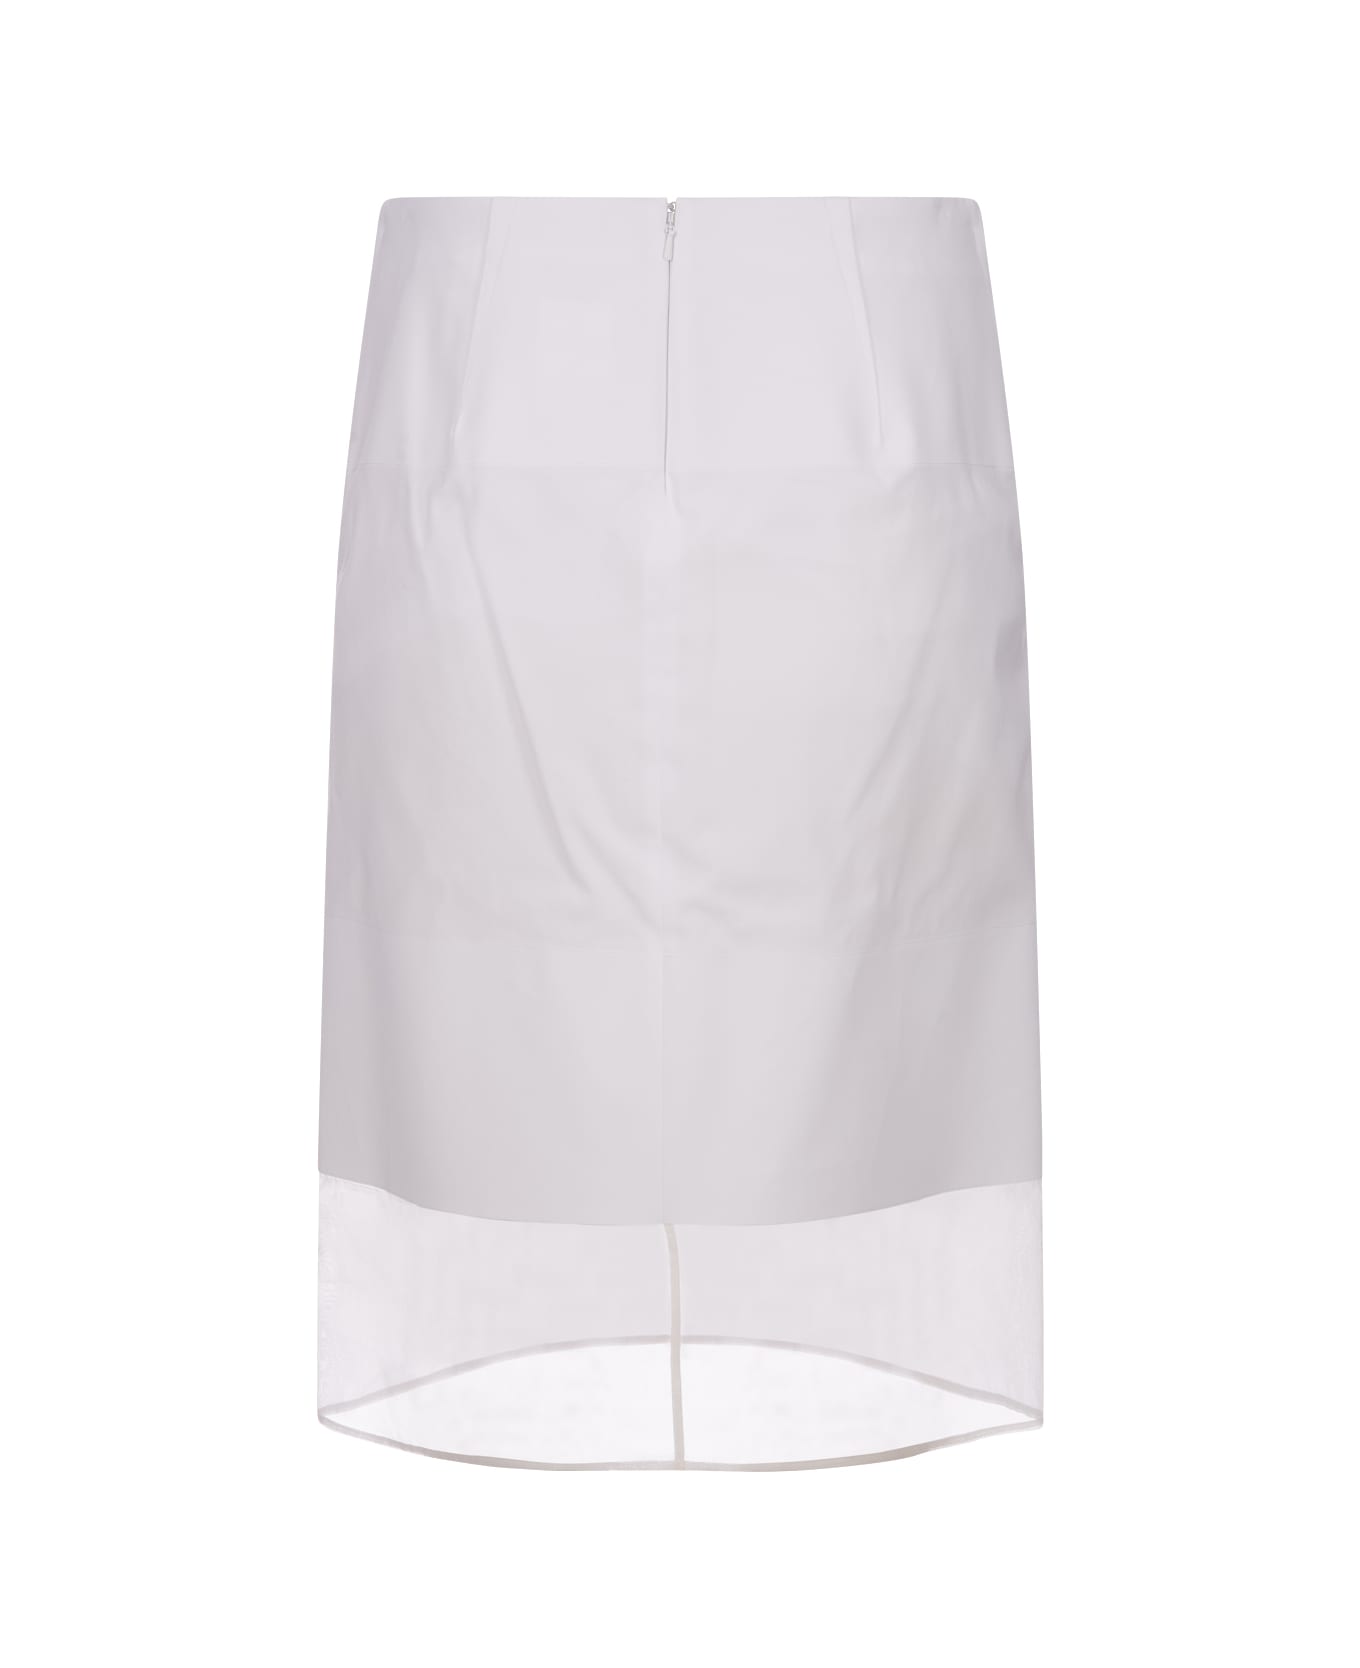 SportMax White Turchia Skirt - White スカート